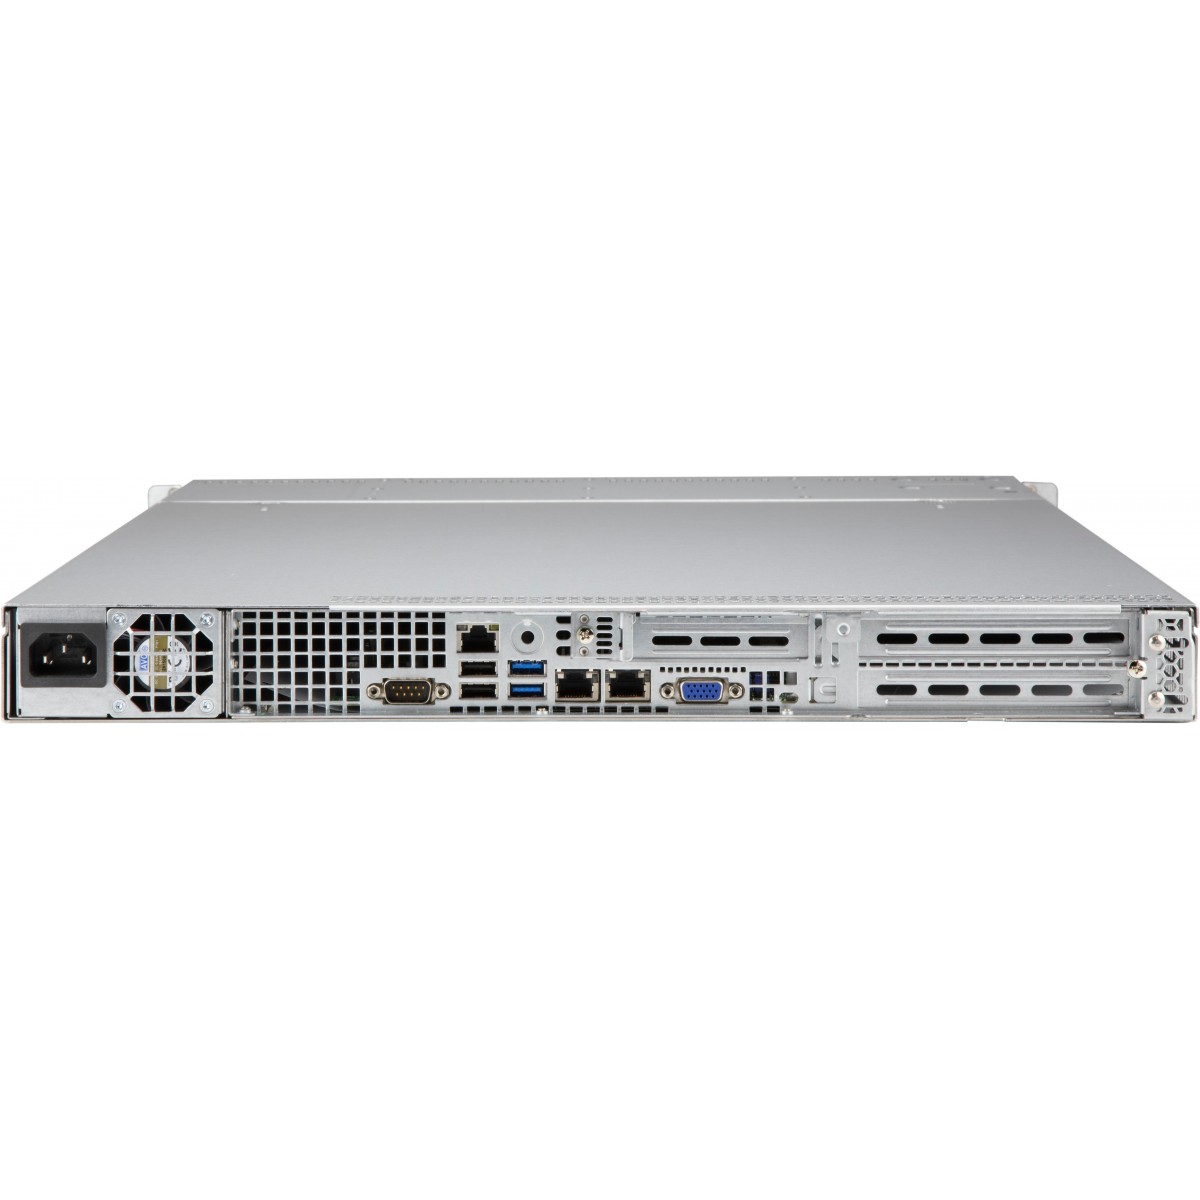 Supermicro Server Geh 1U/1x560W/4x3.5 LA15TQC-563W - Case - ATX